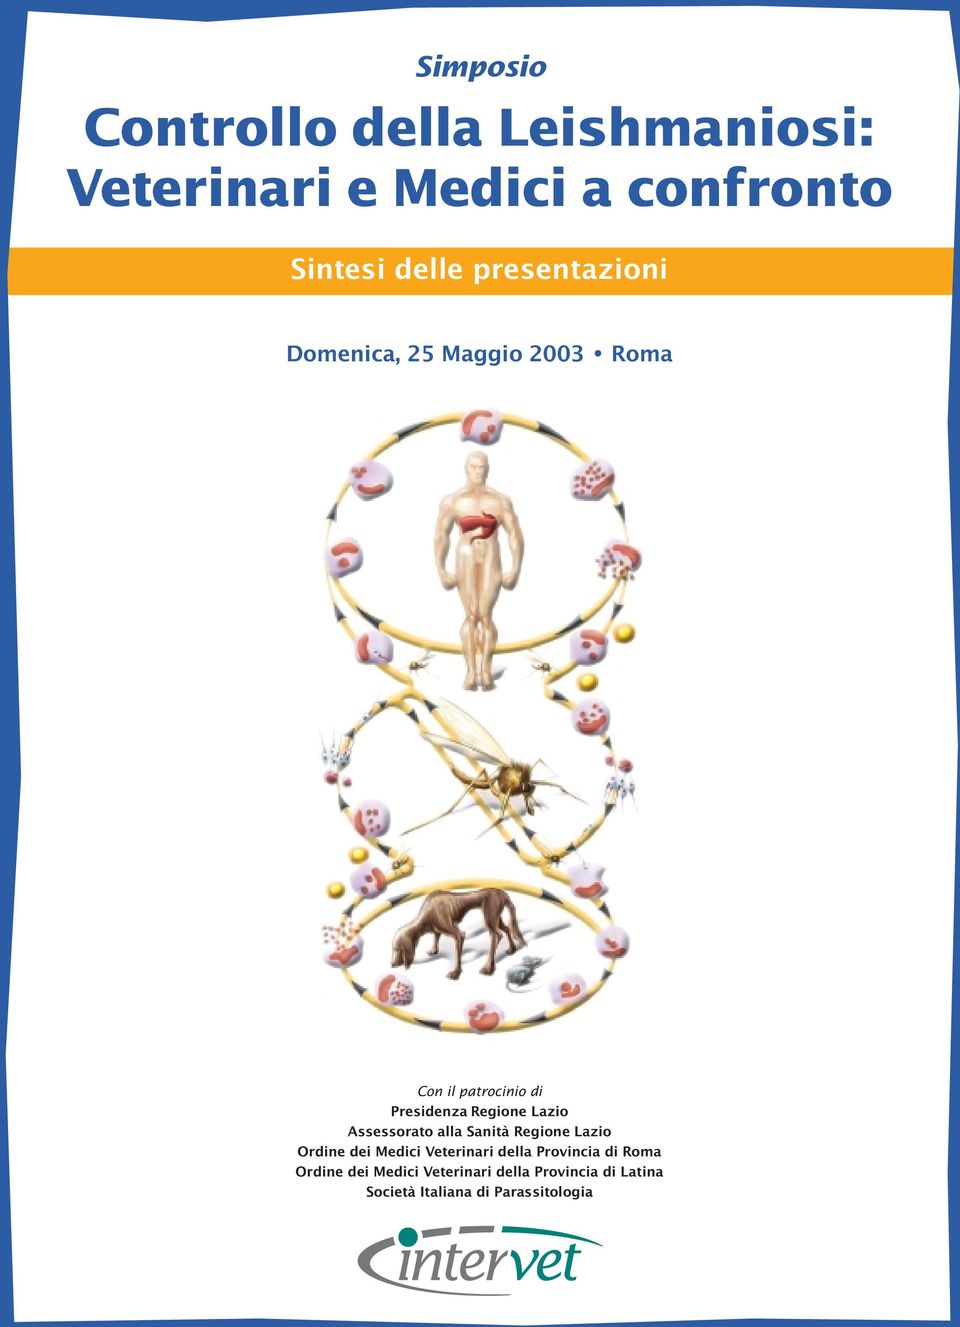 Lazio Assessorato alla Sanità Regione Lazio Ordine dei Medici Veterinari della Provincia